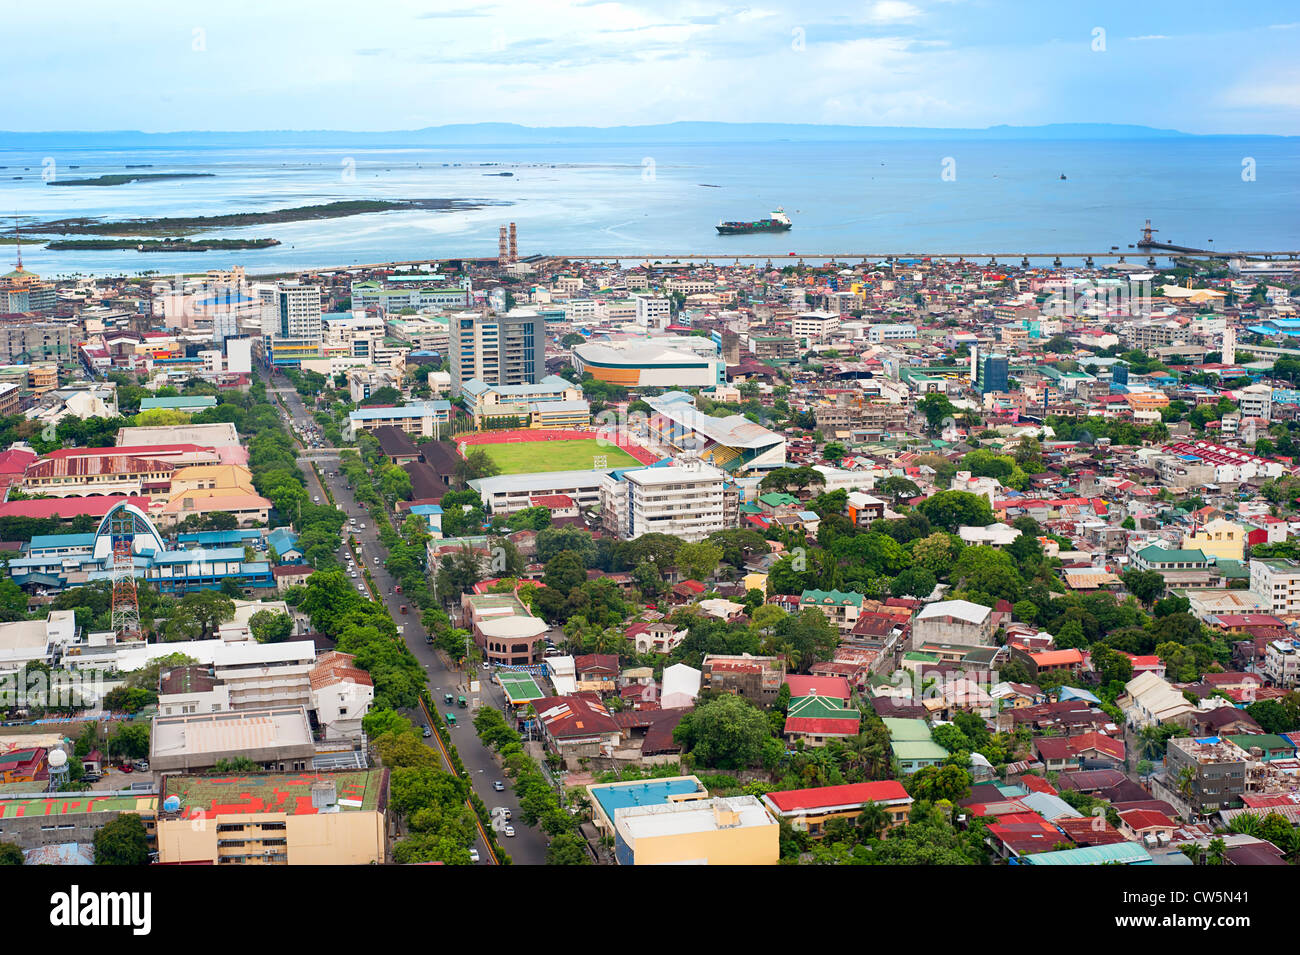 Panorama von Cebu City. Cebu ist die zweitwichtigste Metropole Philippinen und inländischen Versand Haupthafen. Stockfoto